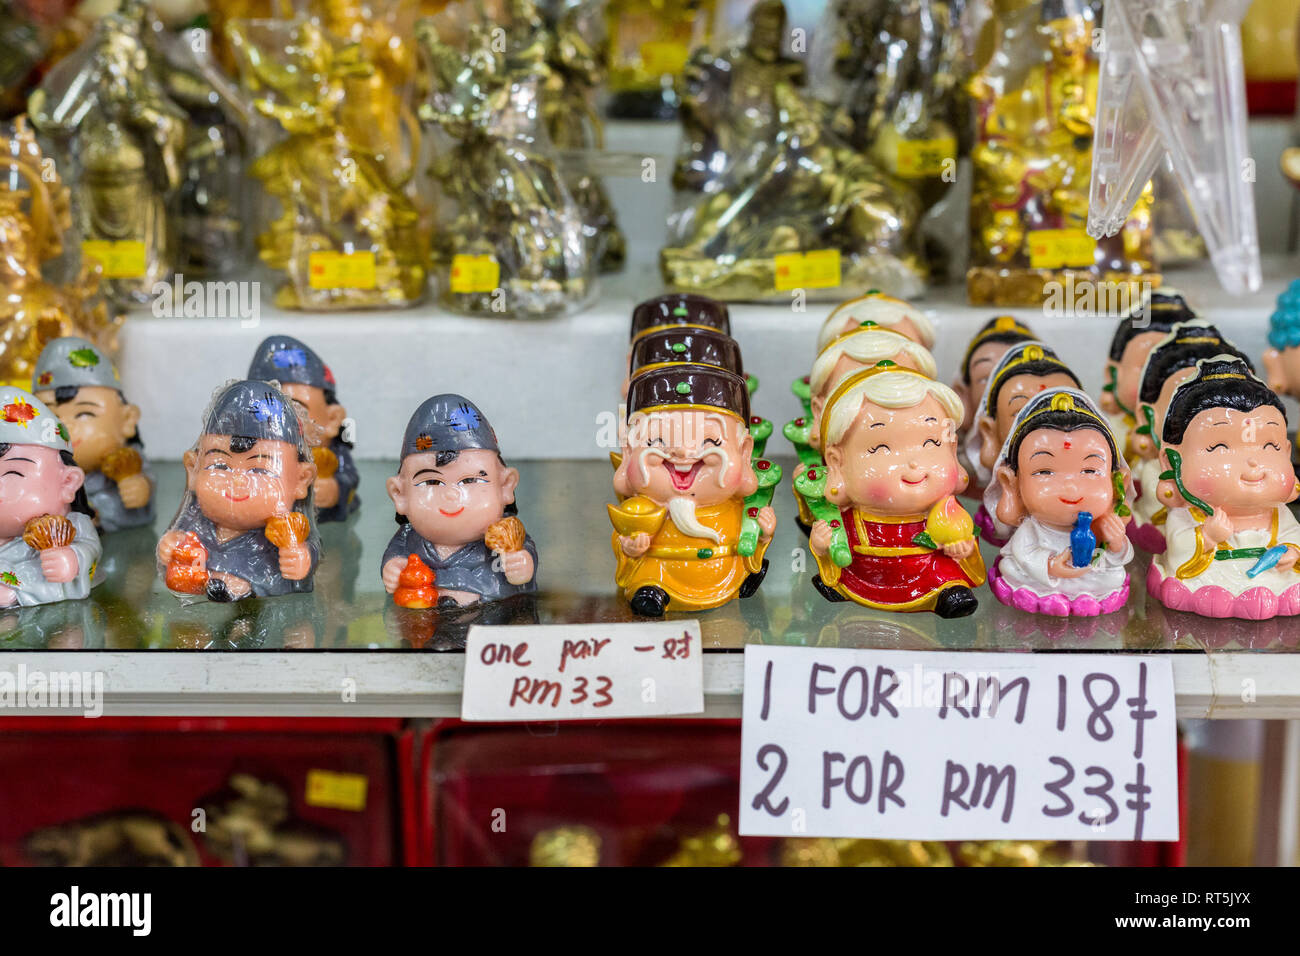 Negozio di souvenir, ninnoli e doni per la vendita nel negozio di articoli da regalo, Kek Lok Si tempio buddista, George Town, Penang, Malaysia. Foto Stock